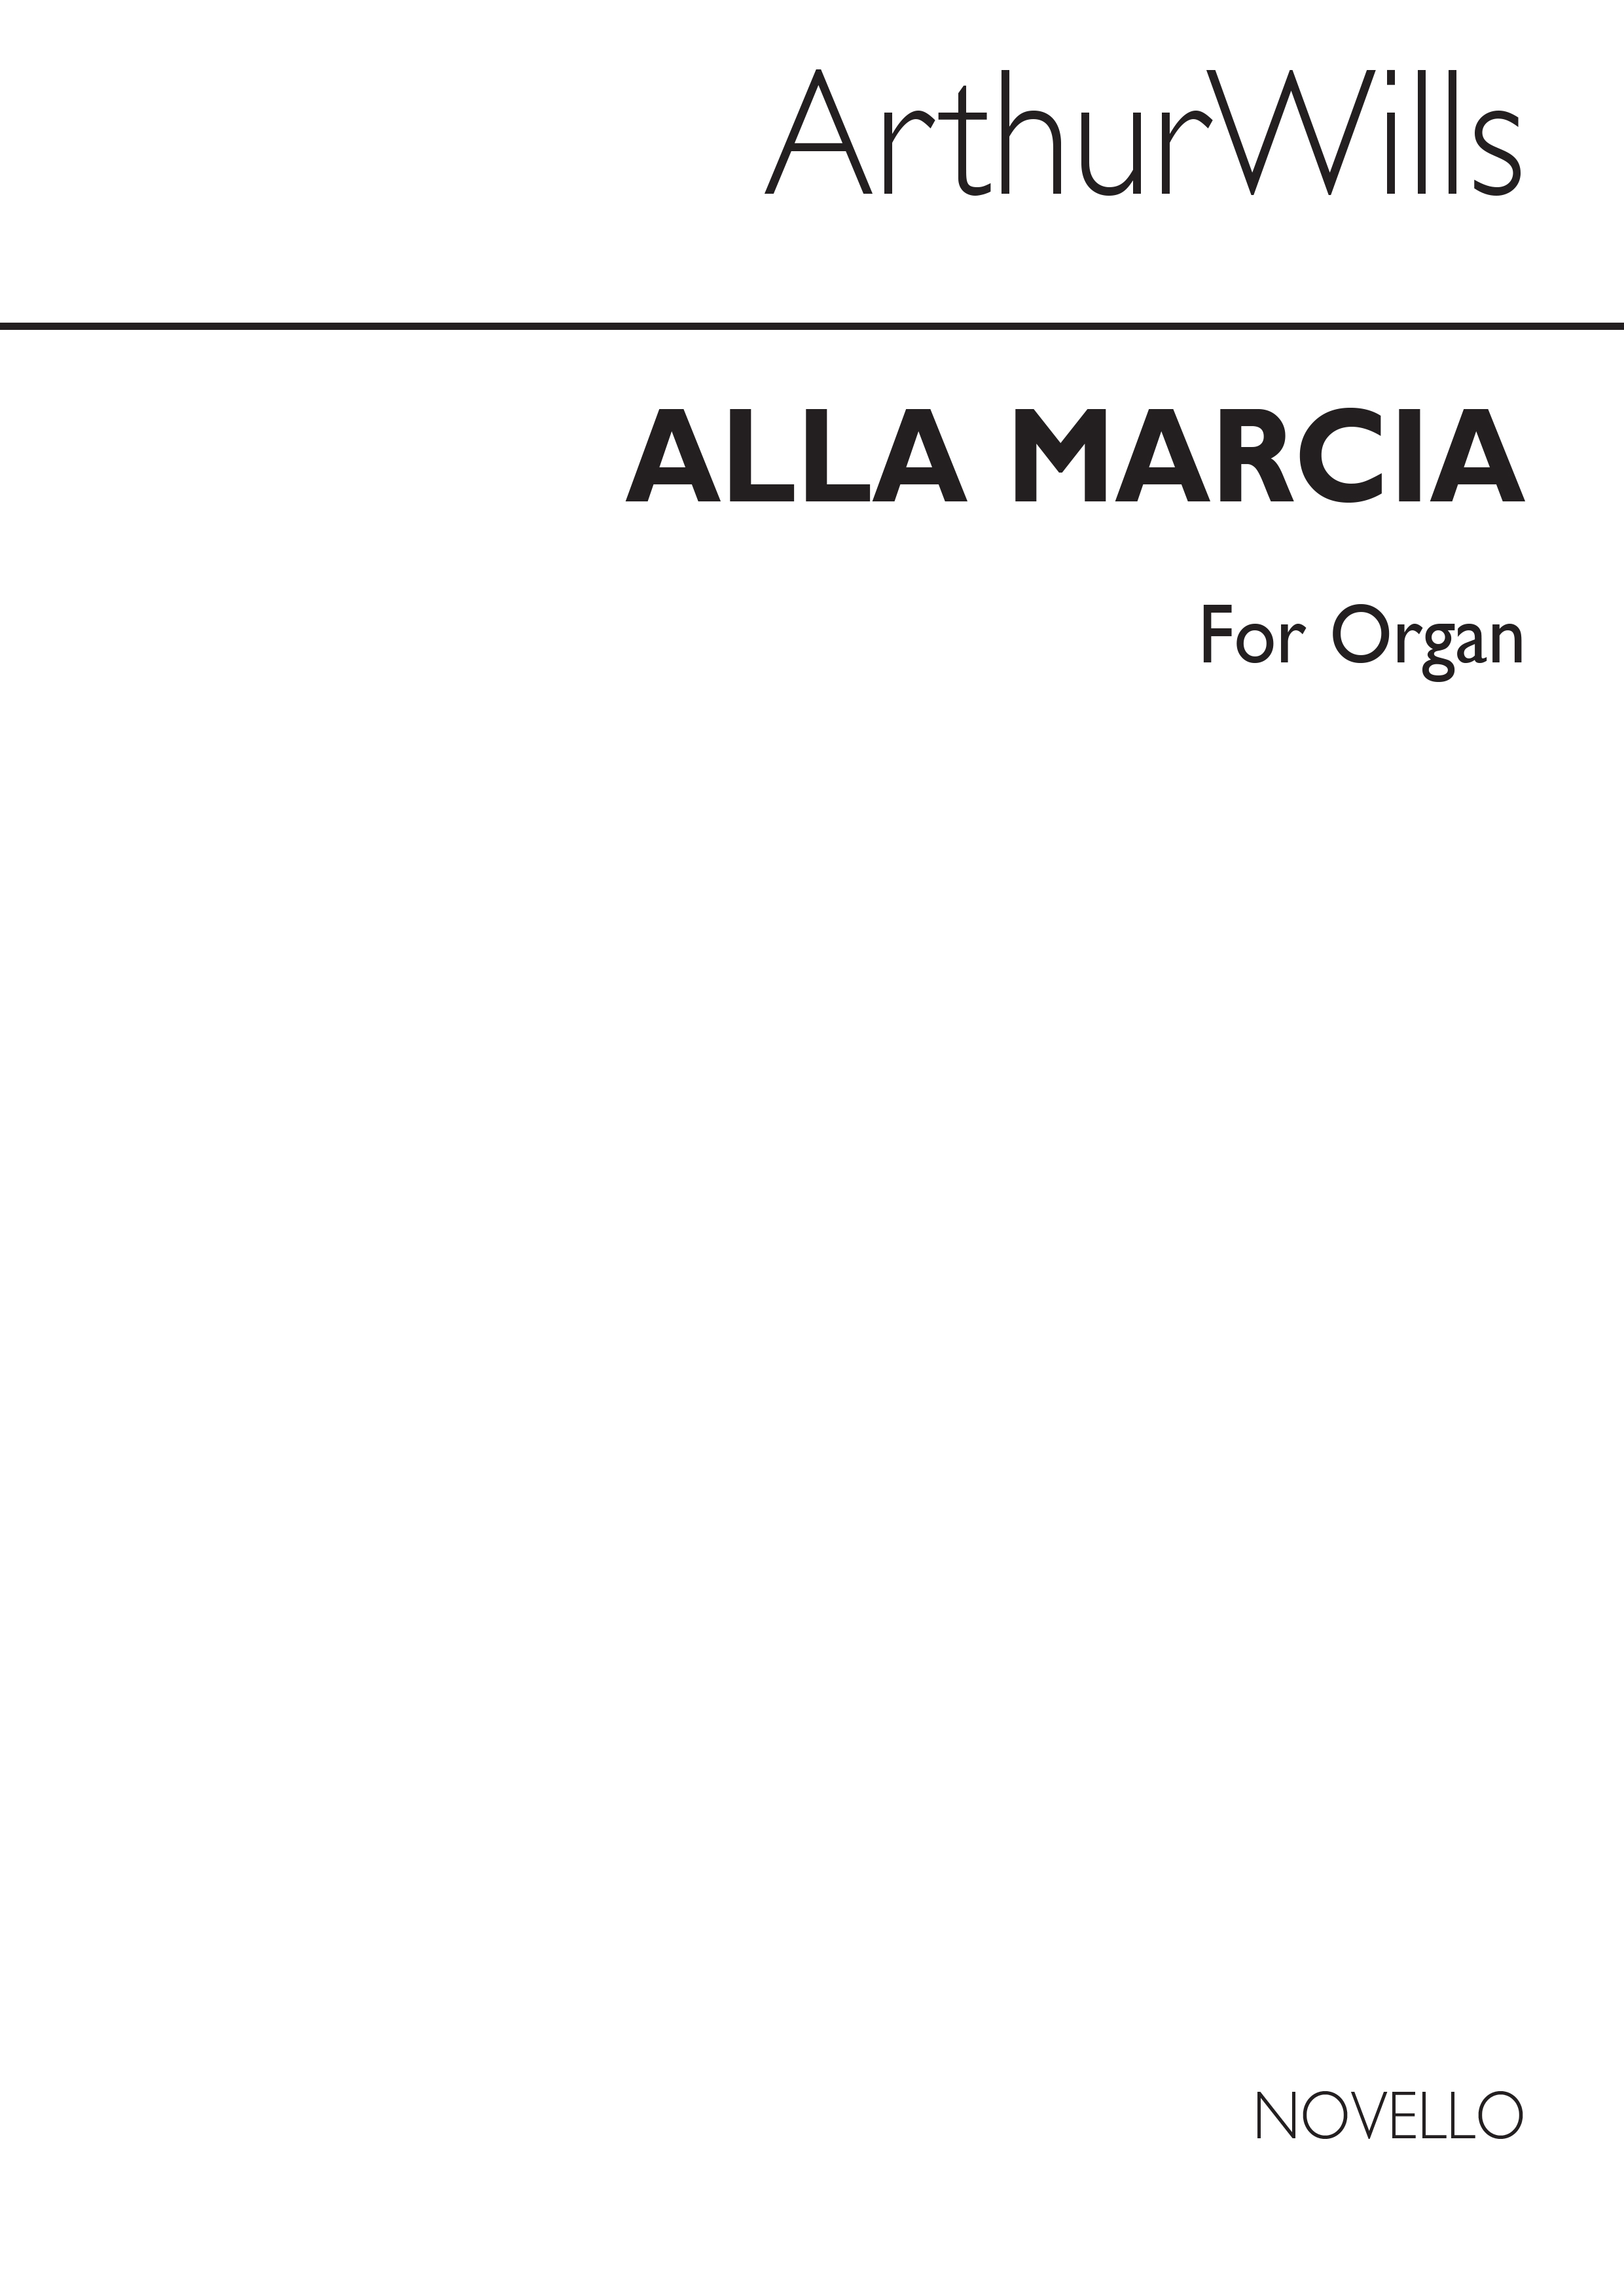 Arthur Wills: Alla Marcia Organ